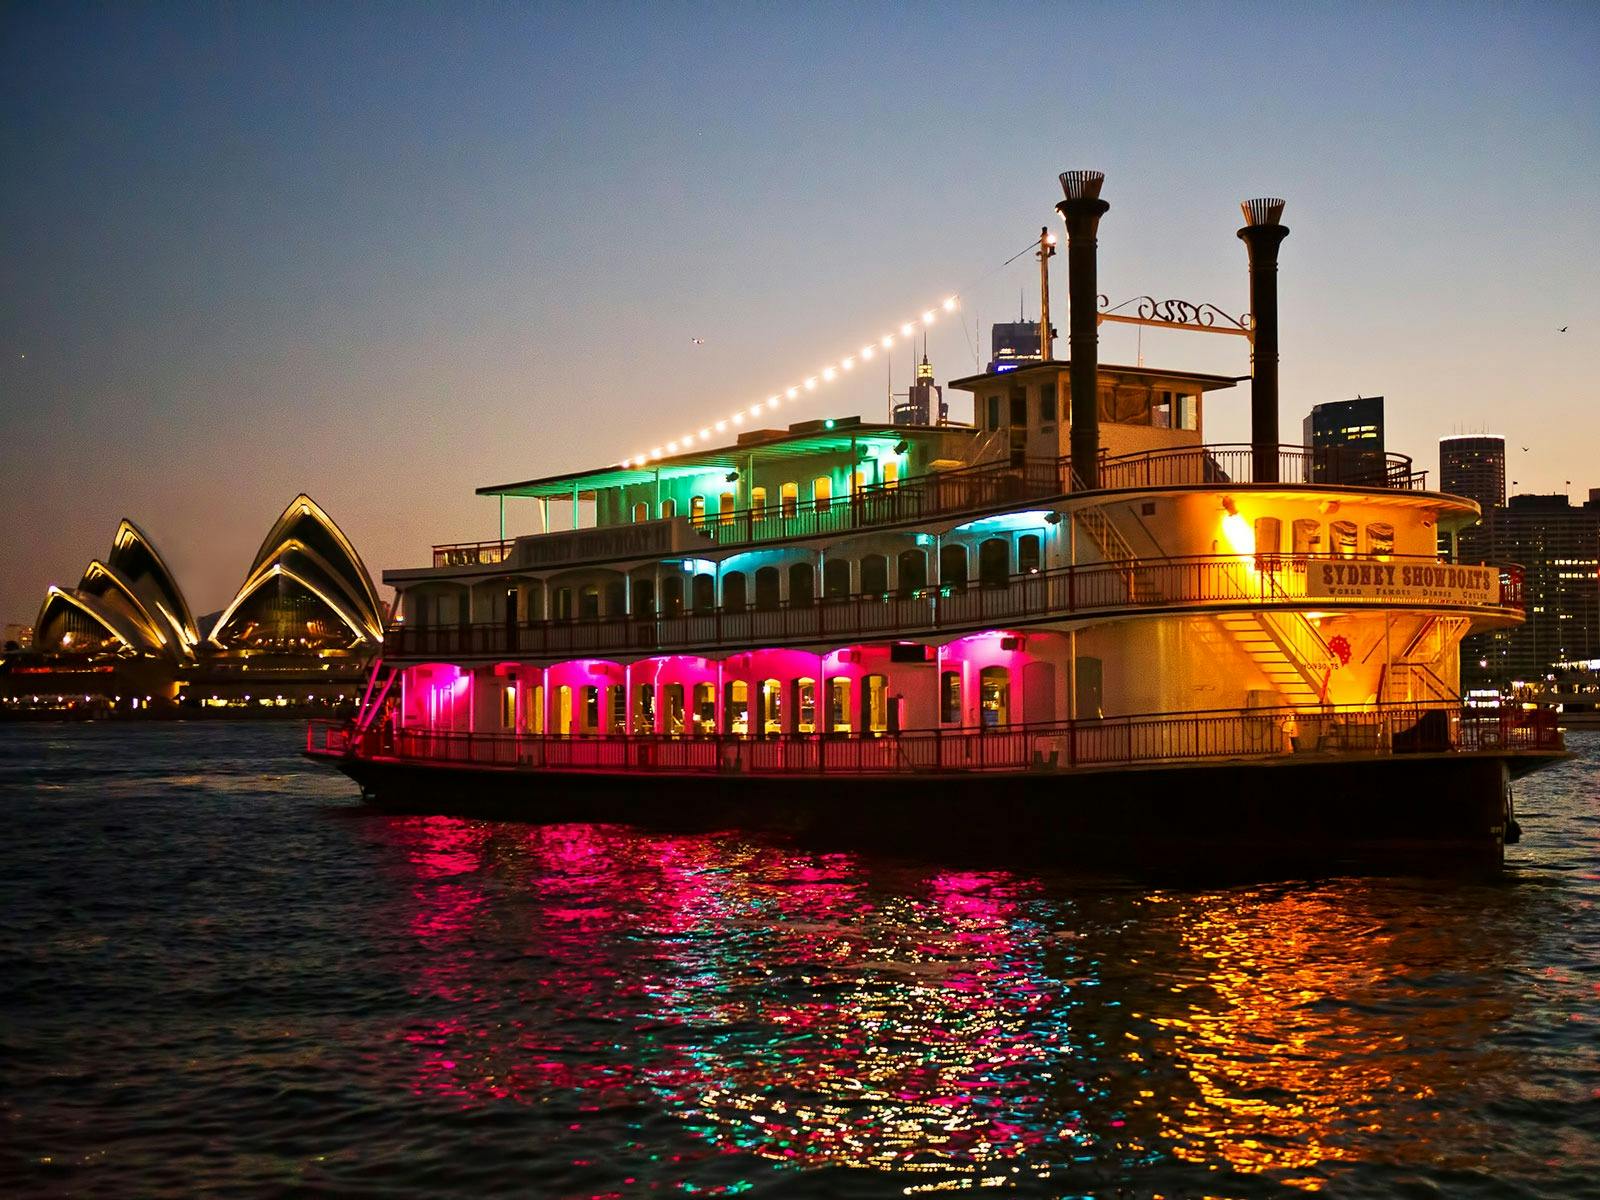 Sydney Showboat Cruises Sydney, Australia Official Travel